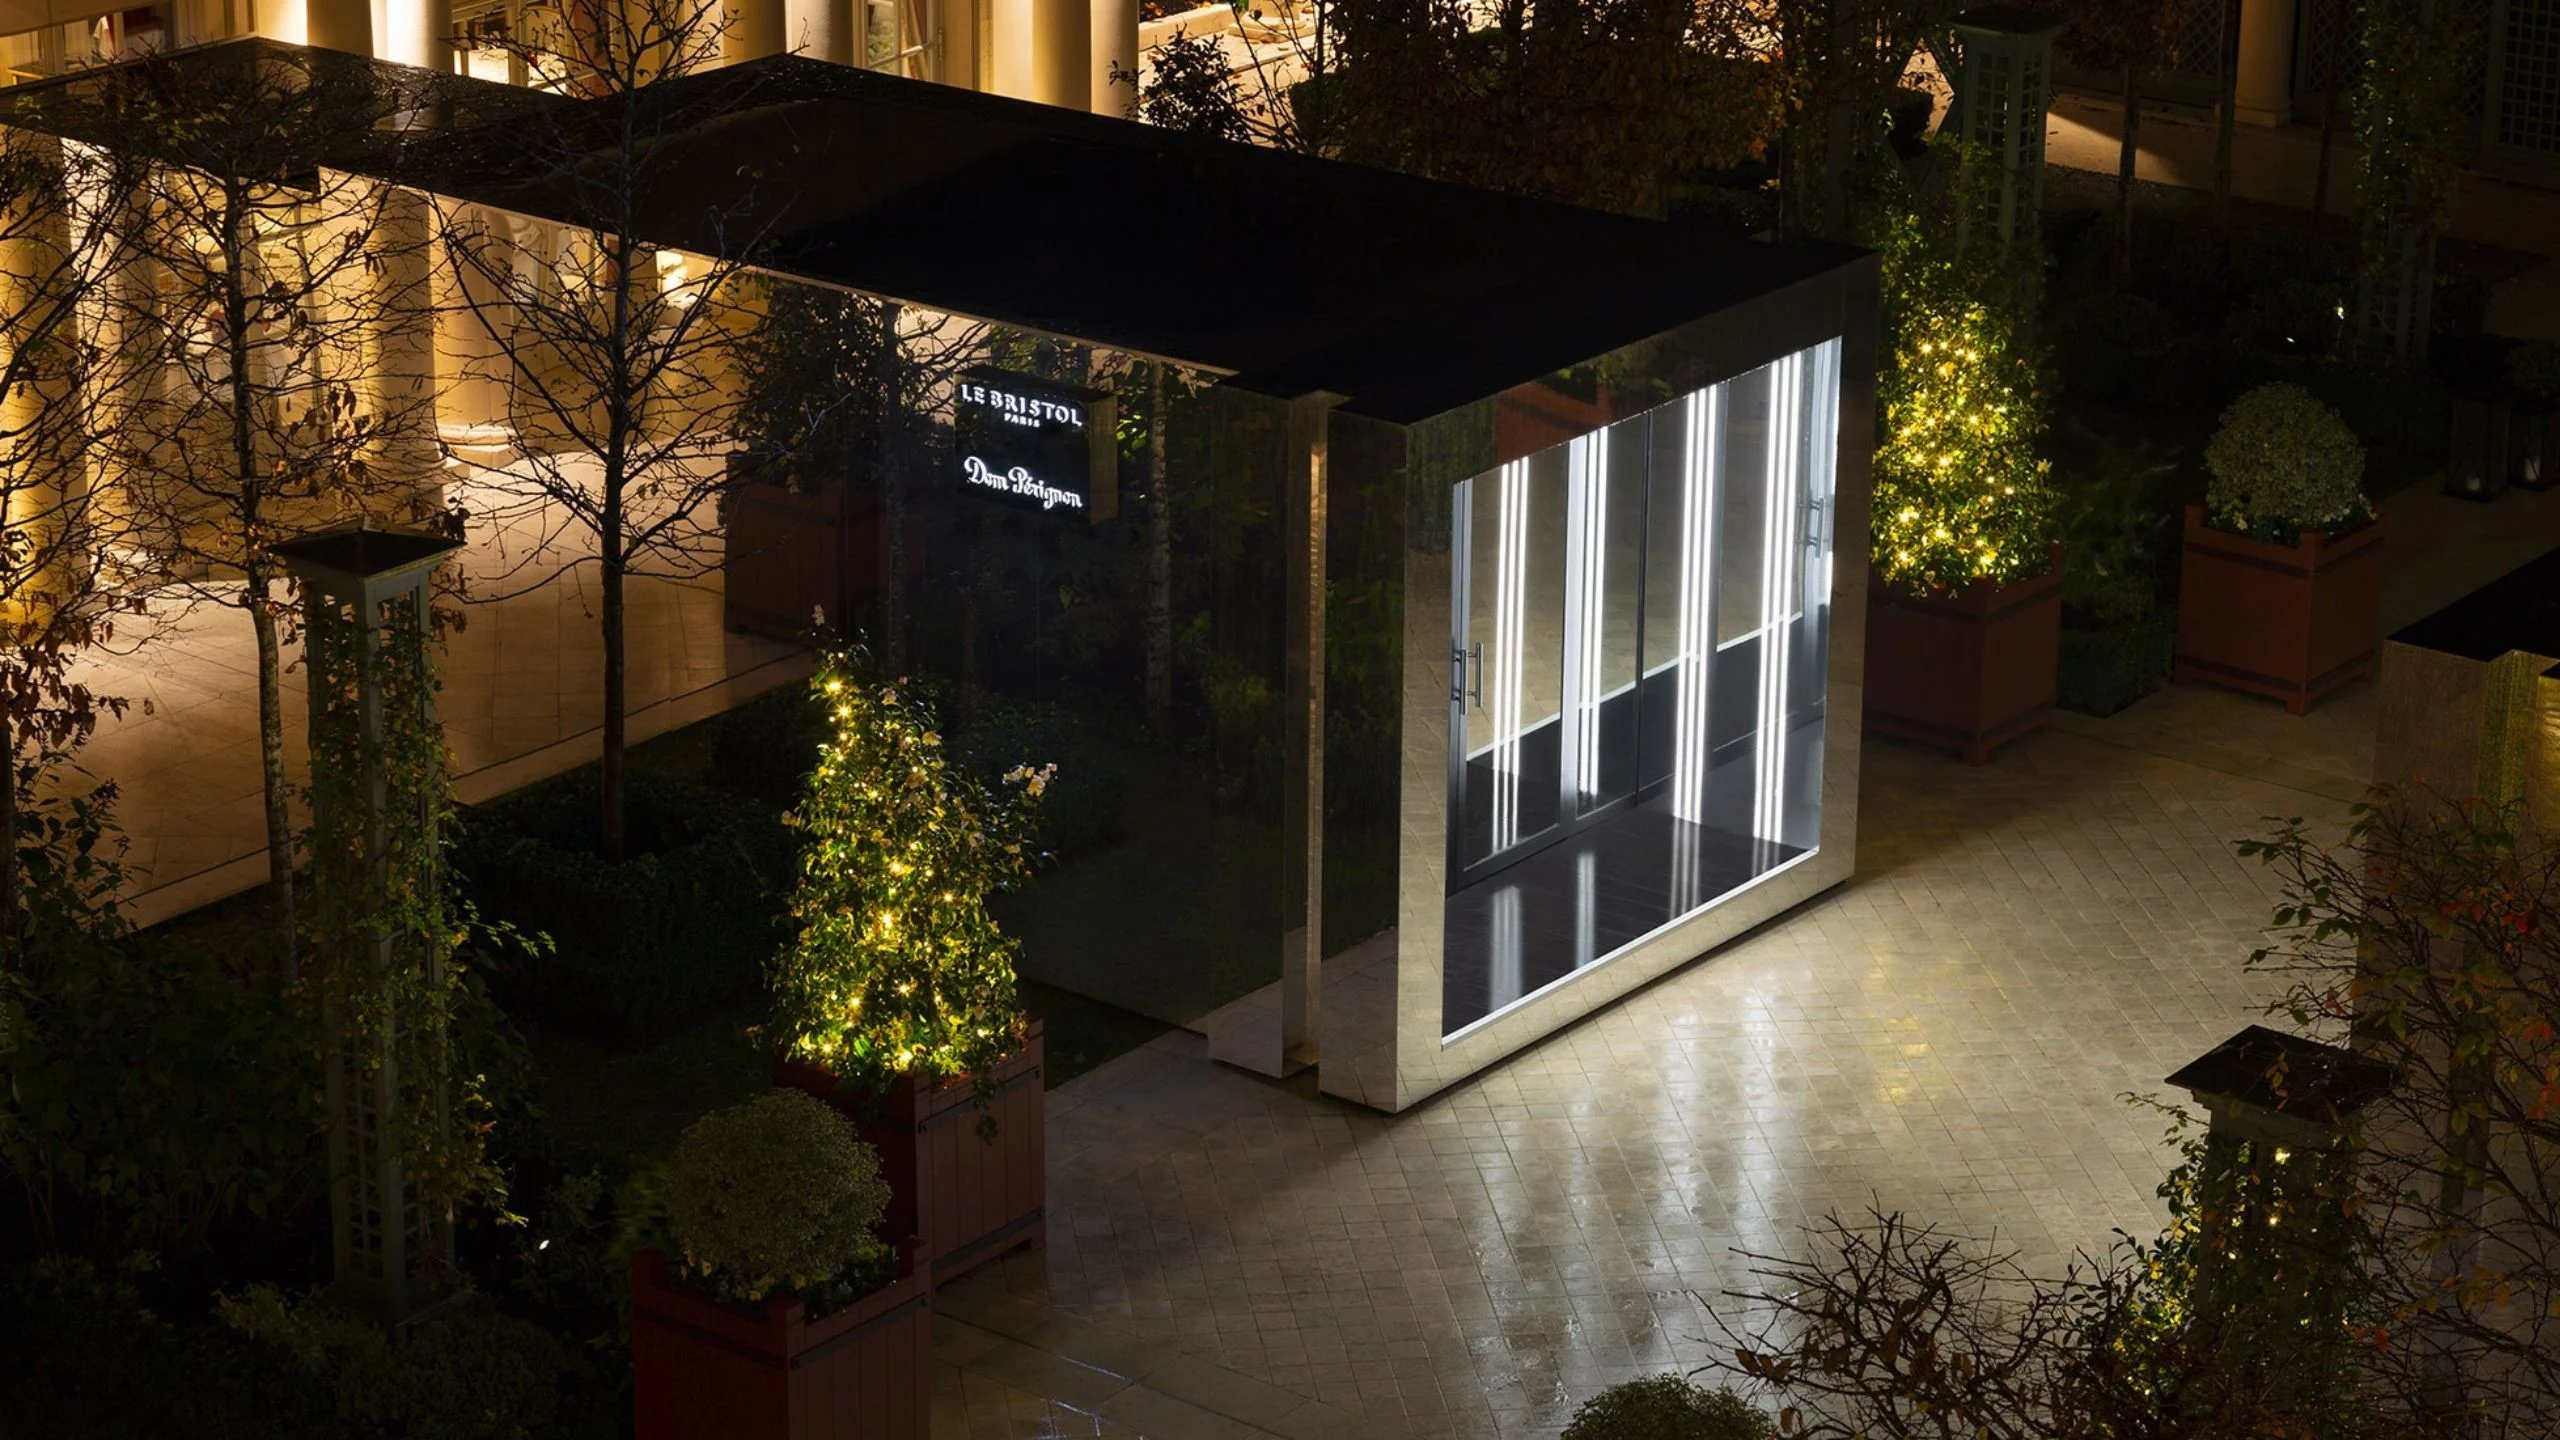 Dom Pérignon abre su primer bar en la historia en París